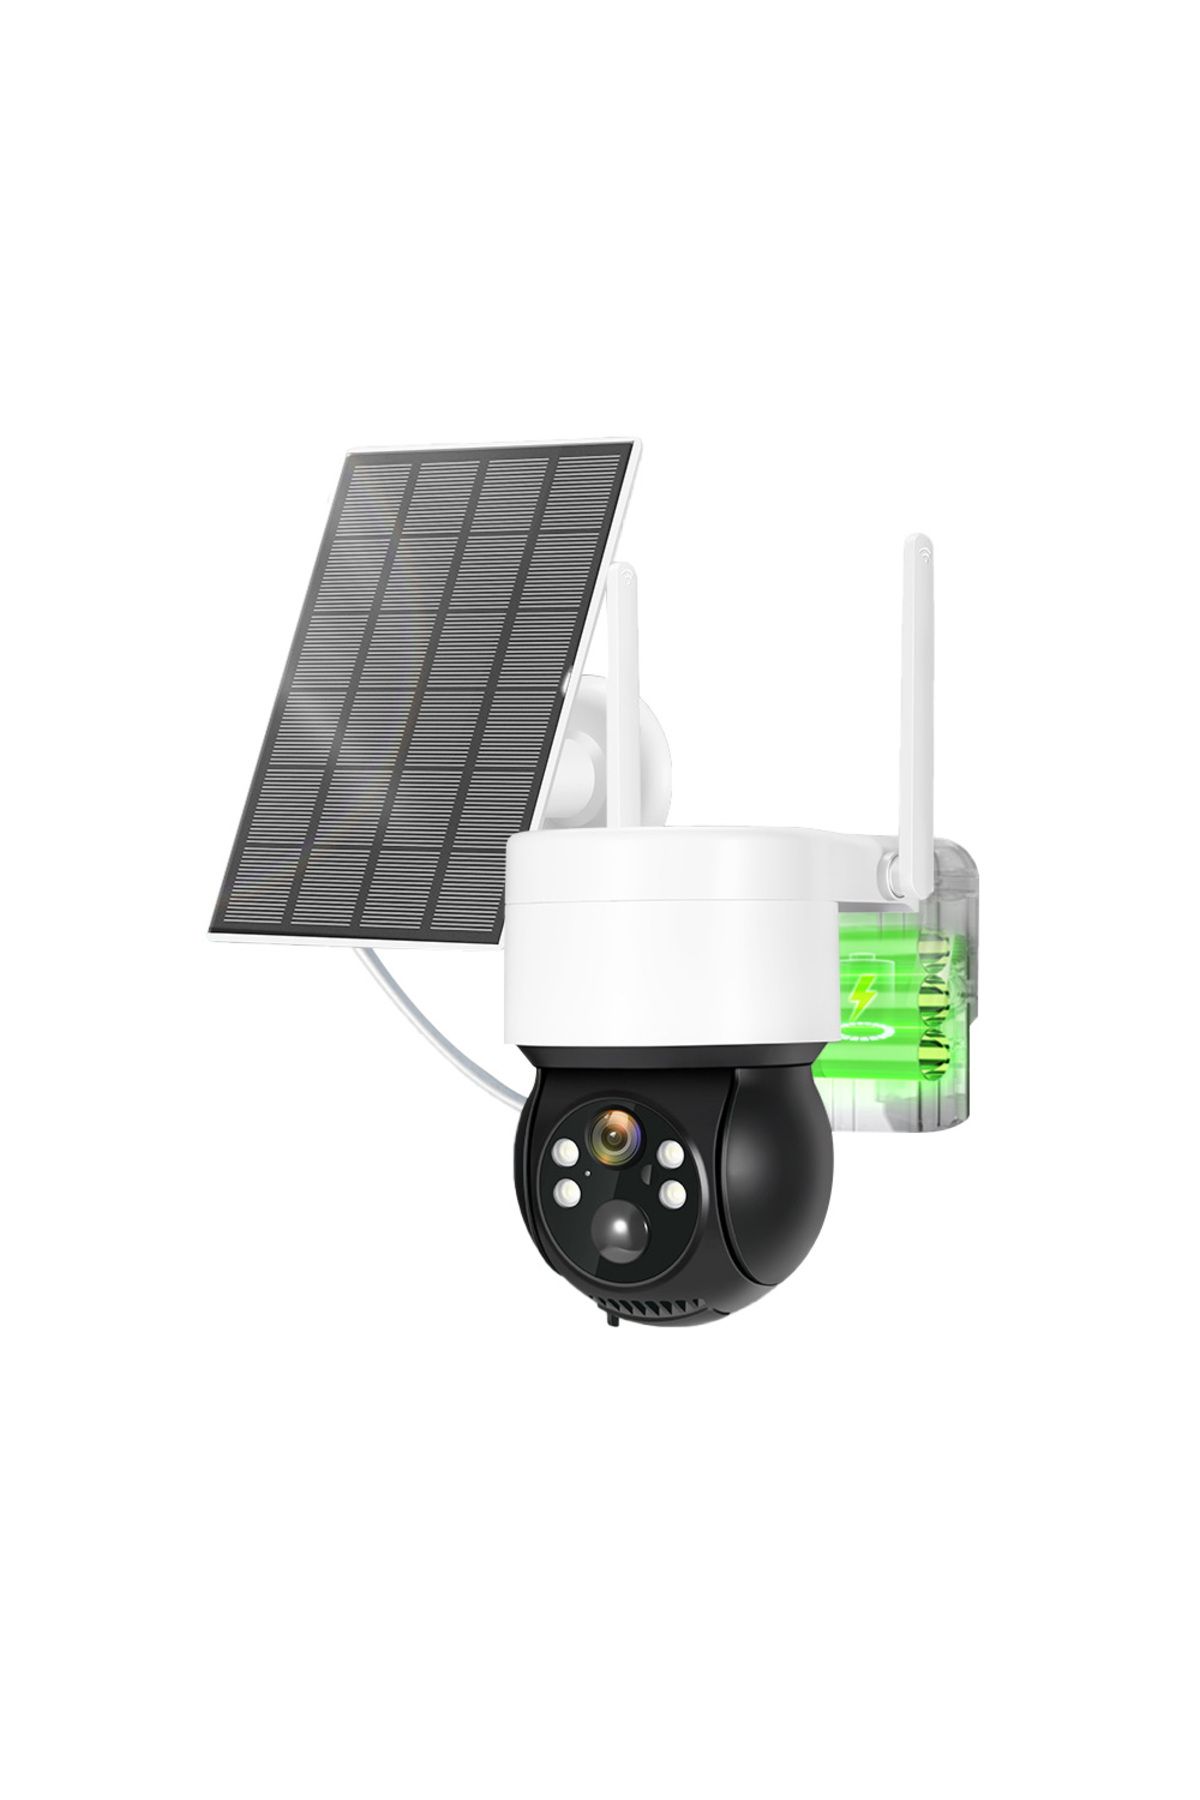 yoosee Güneş panelli Wifi li Solarlı Enerjinin olmadığı yerler için Kablosuz Güvenlik Kamerası